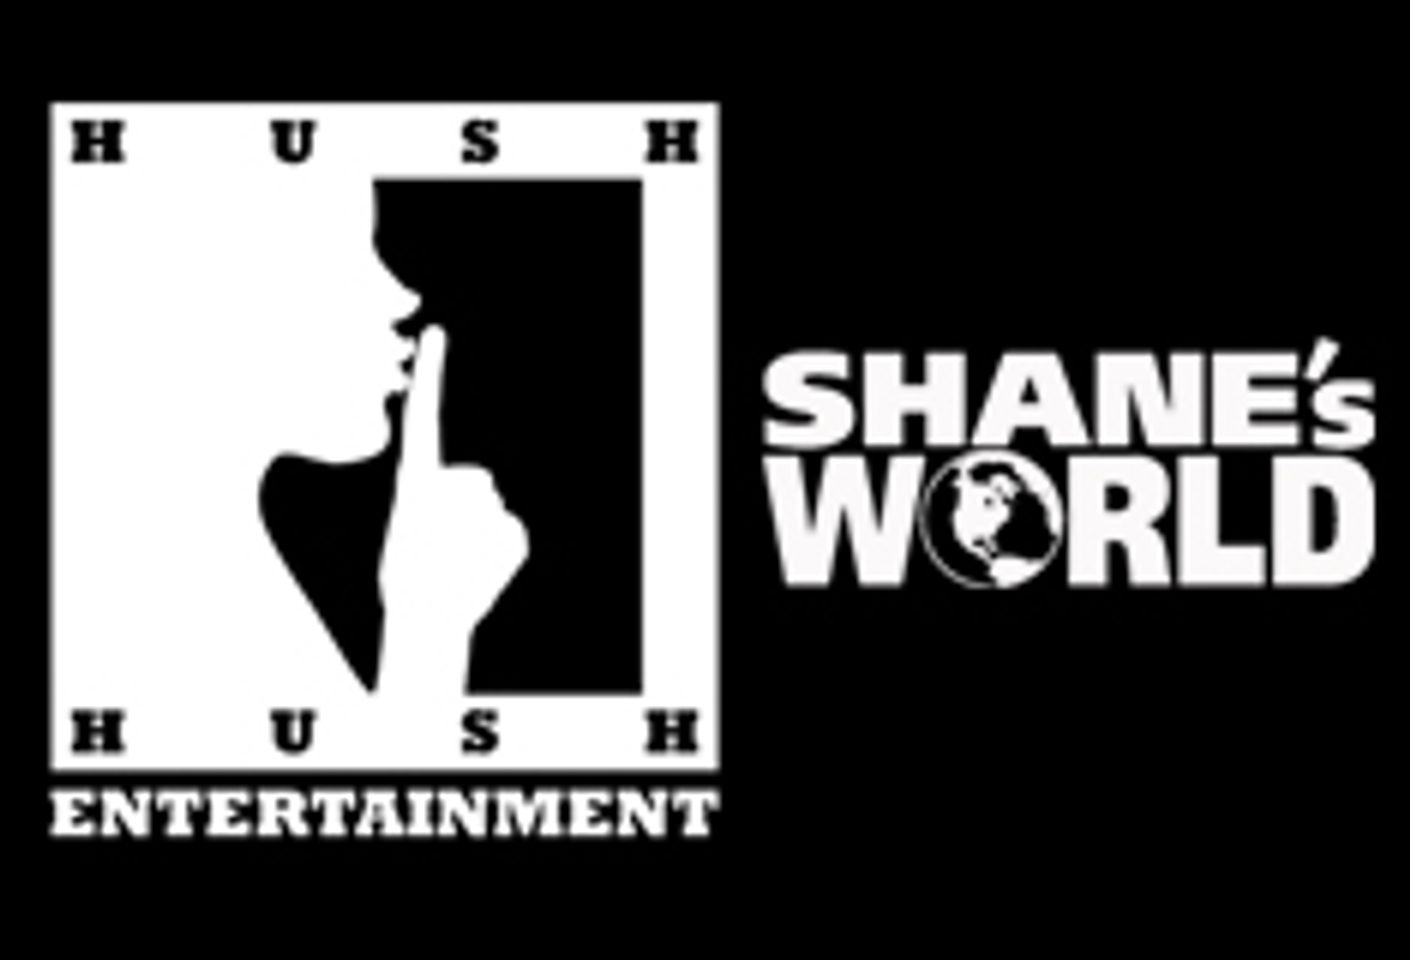 Shane's World/Hush Hush Names Valerie See VP of Operations